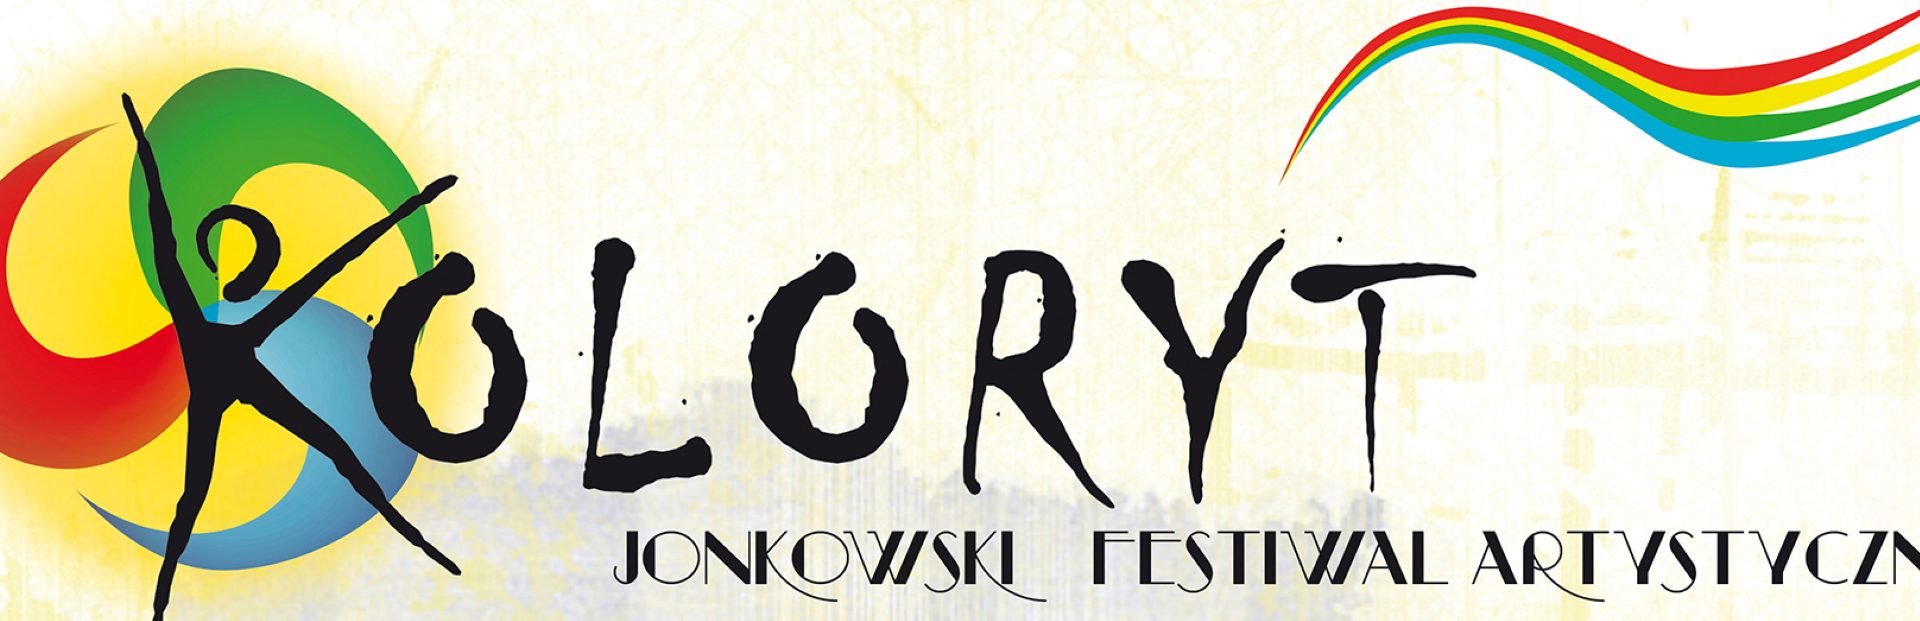 Plakat graficzny zapraszający do Jonkowa na coroczną imprezę plenerową Festiwal Koloryt Jonkowo 2022.